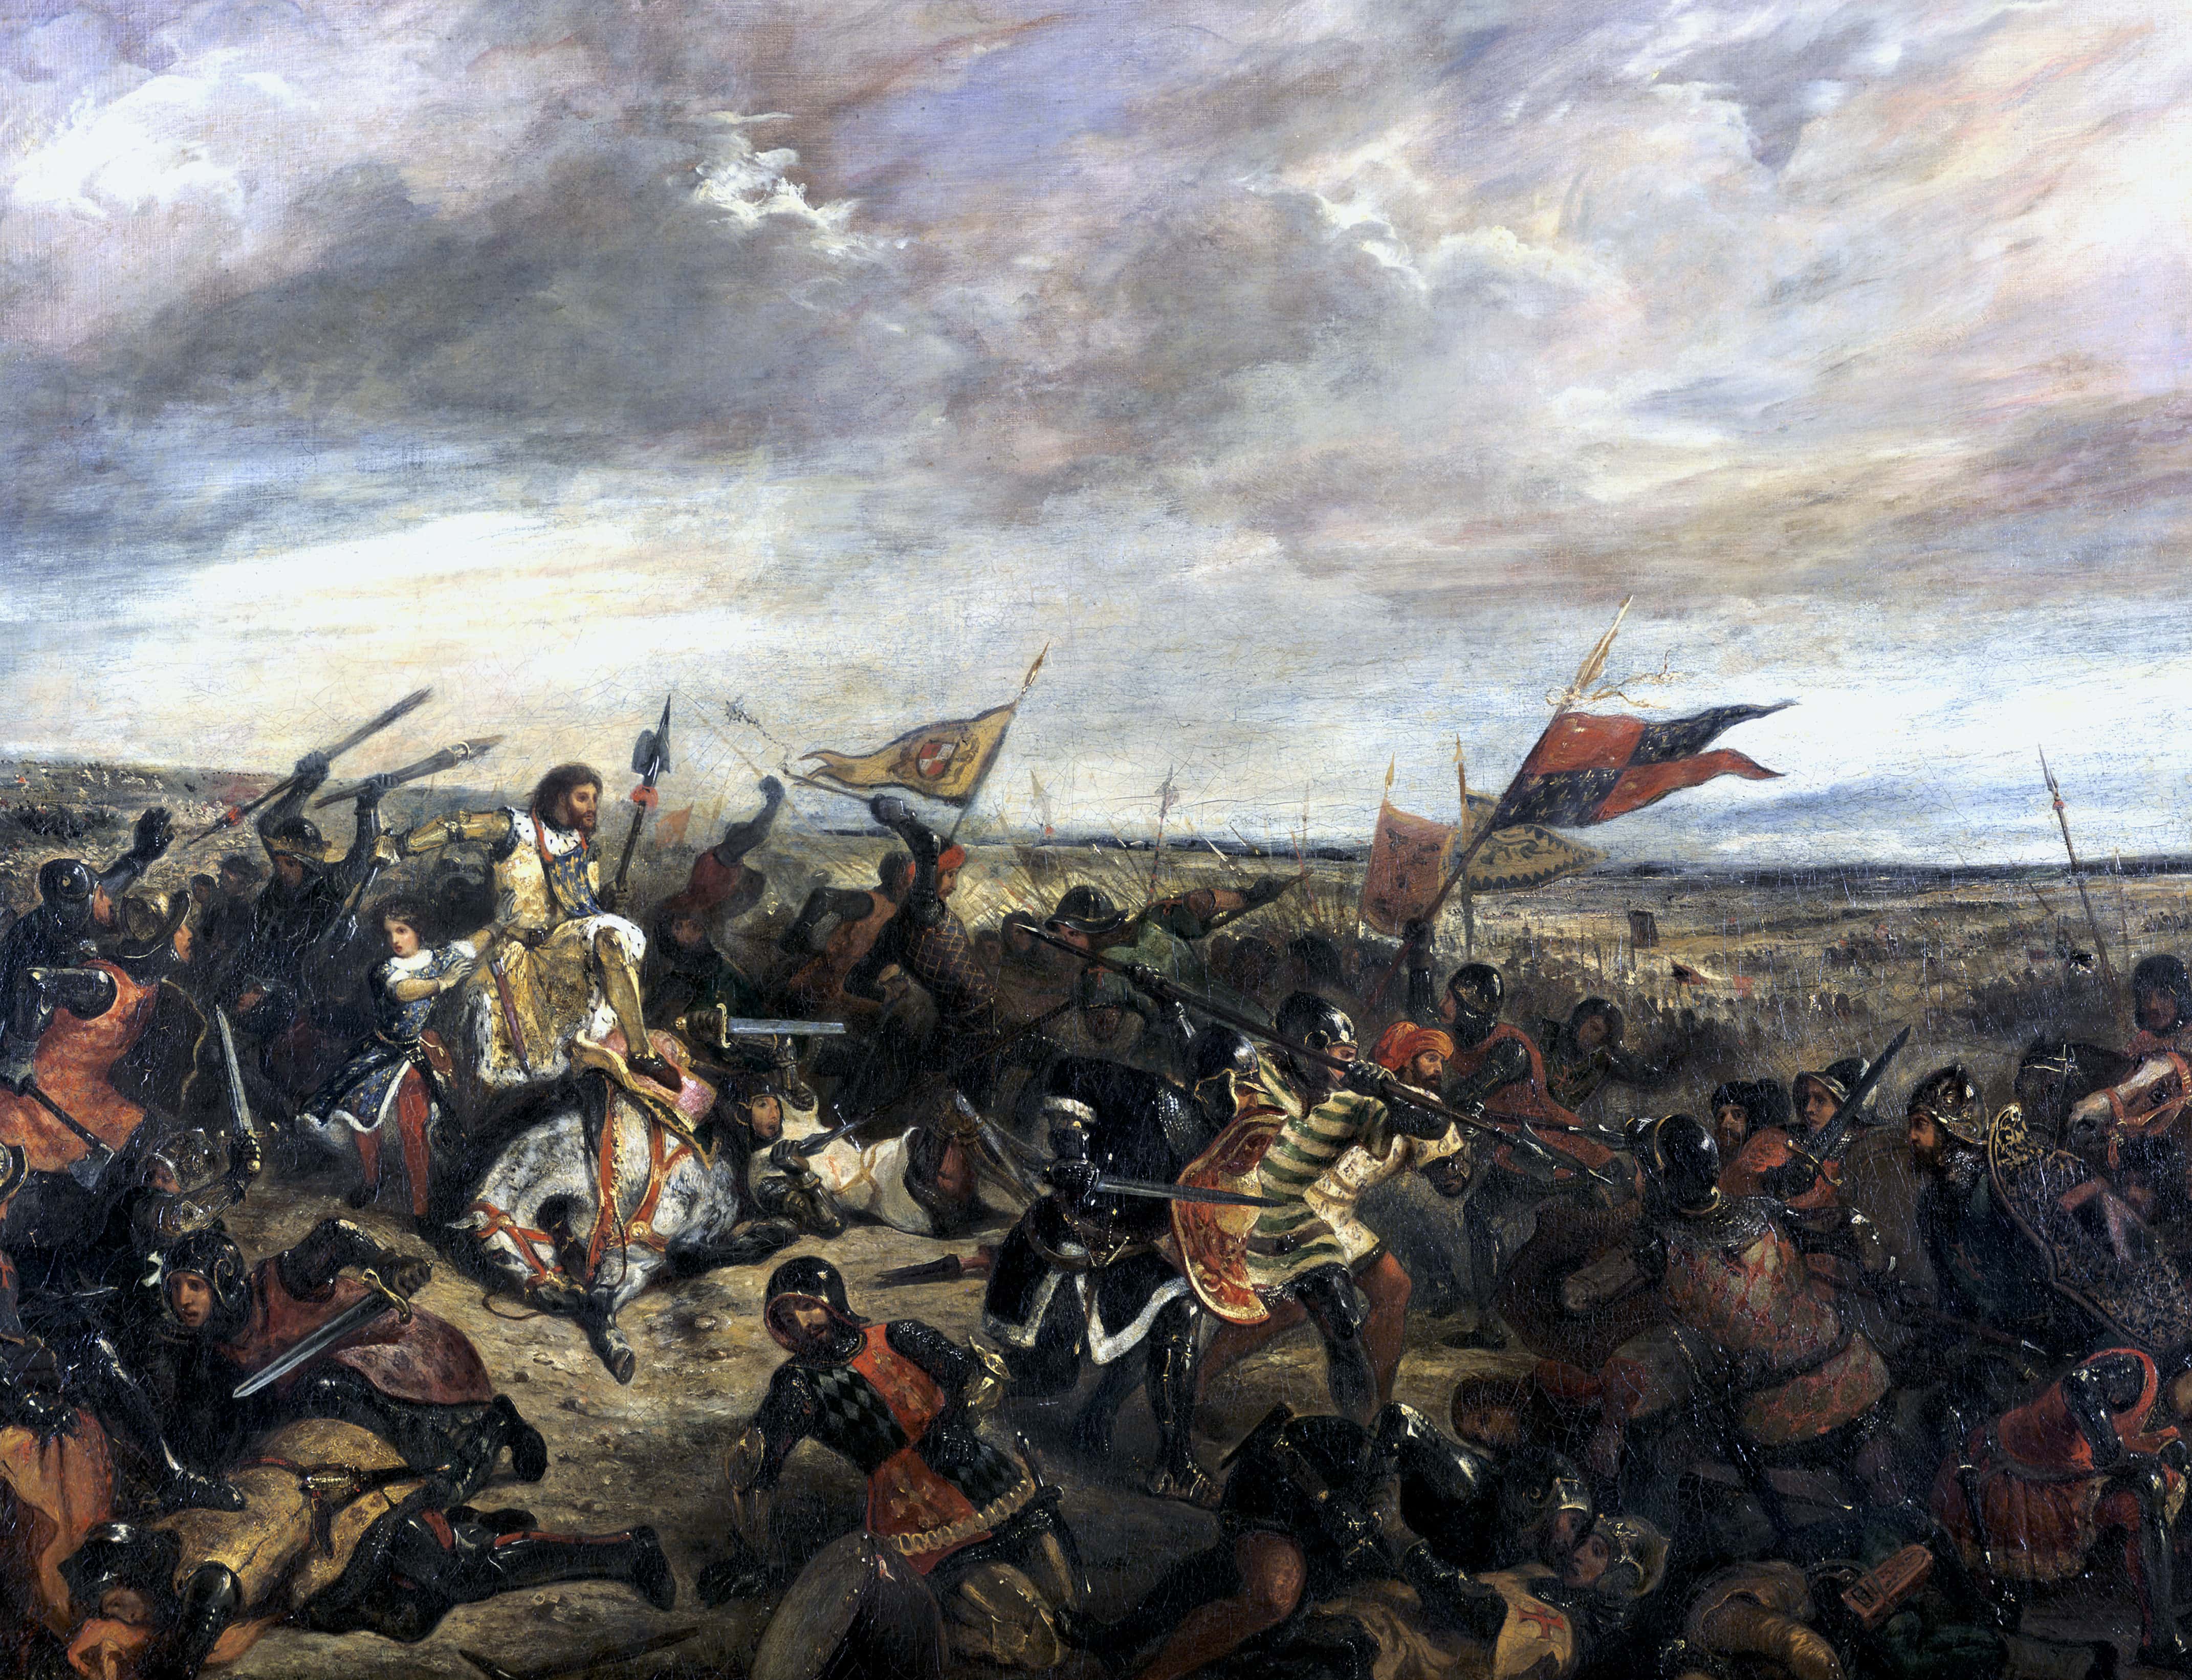 'Battle of Poitiers' (1356), 1830. Artist: Eugène Delacroix.